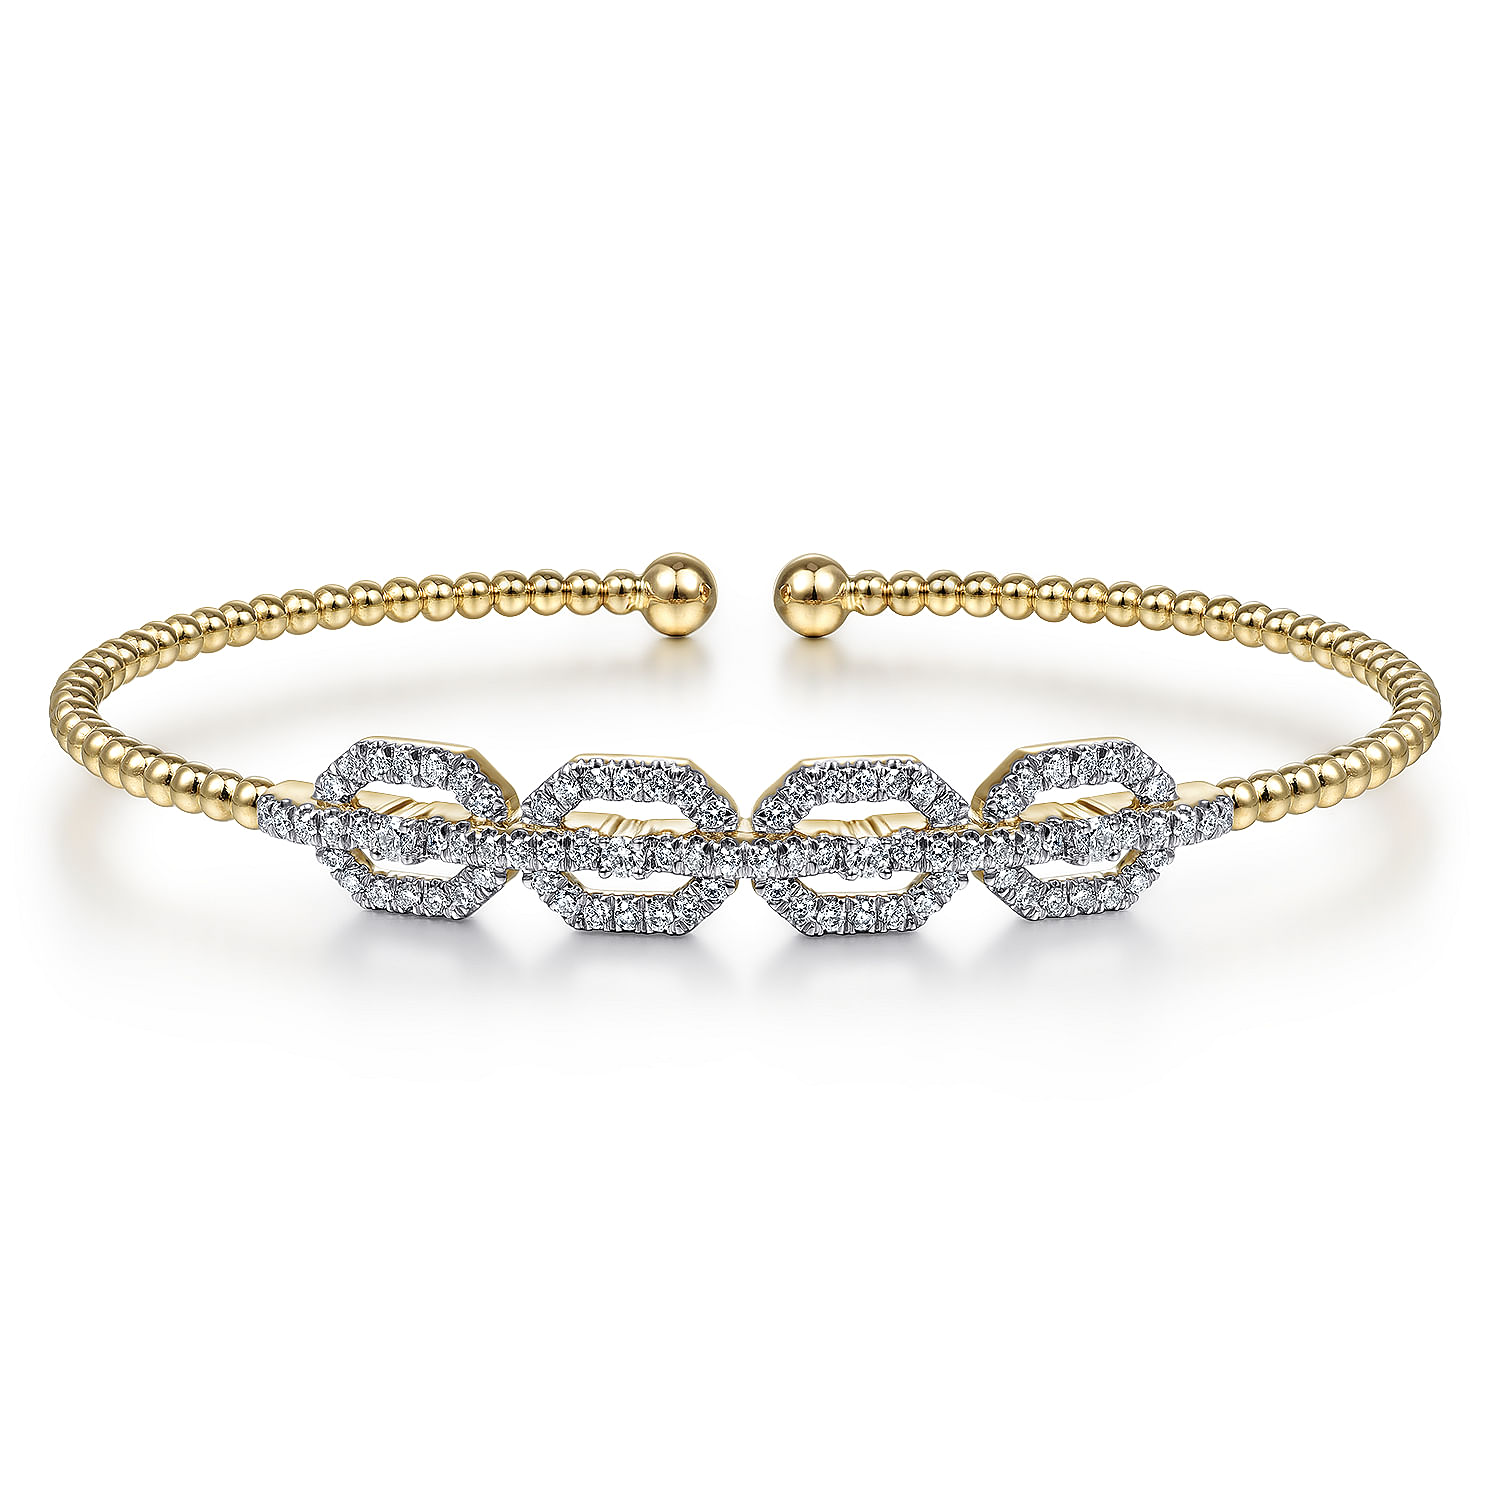 14K Yellow Gold Bujukan Bead Cuff Bracelet with Diamond Pavé Links